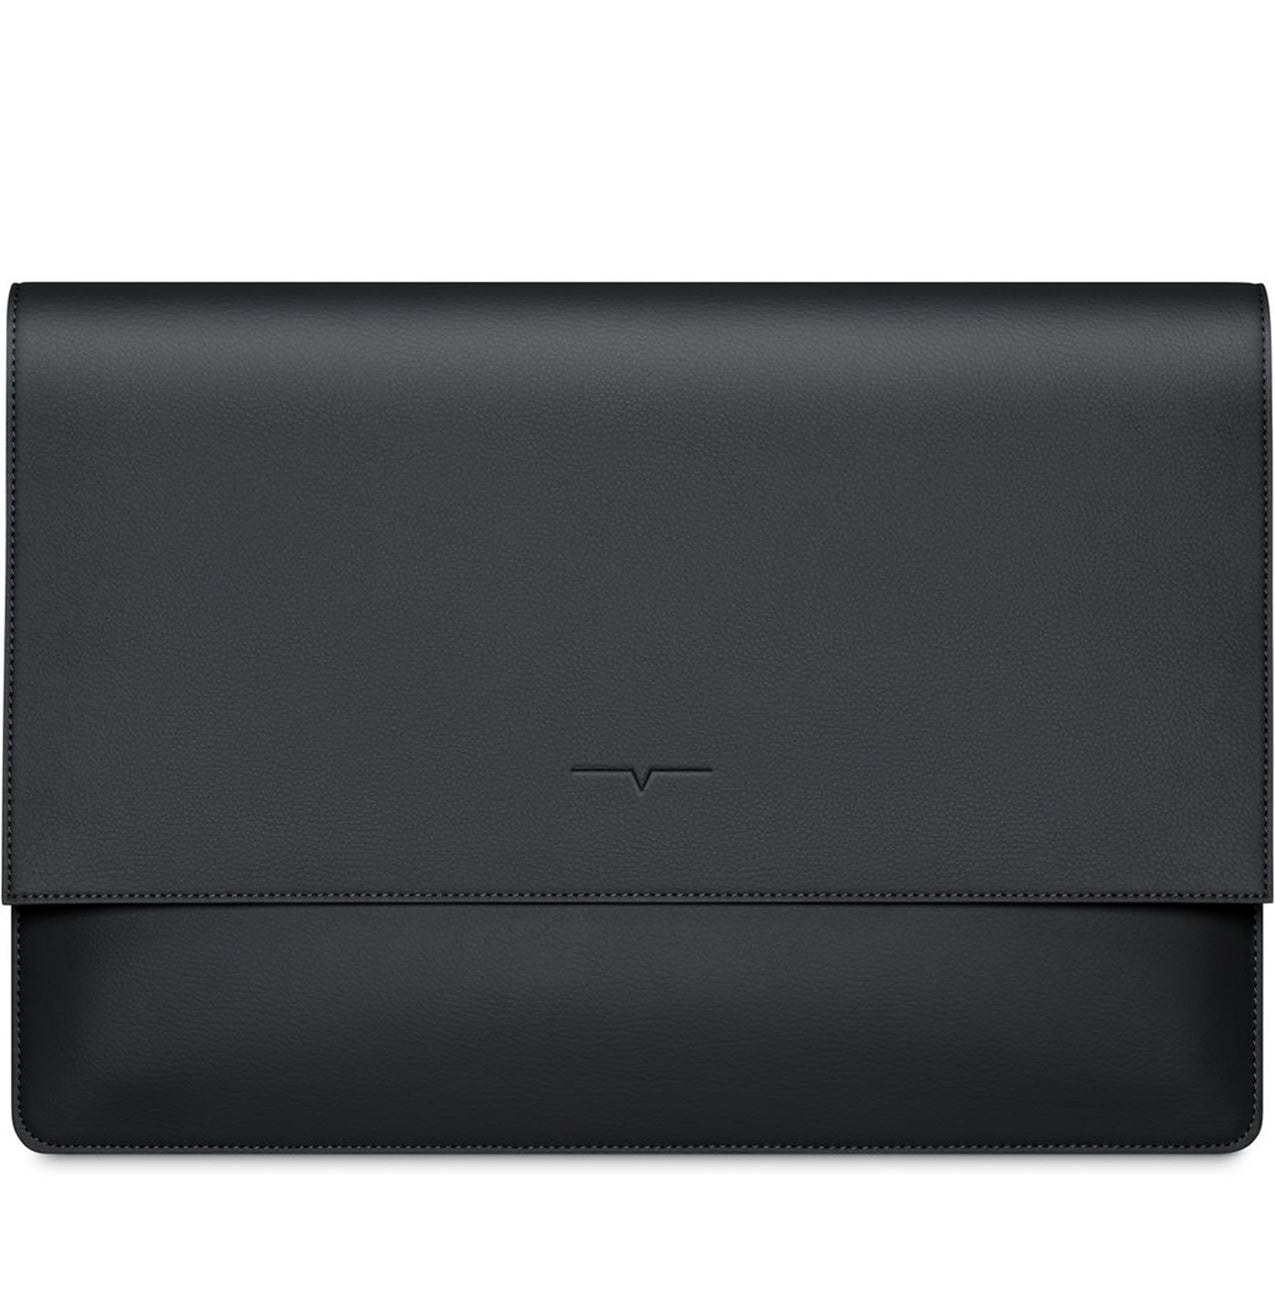 The MacBook Sleeve 13-inch in Black – von Holzhausen